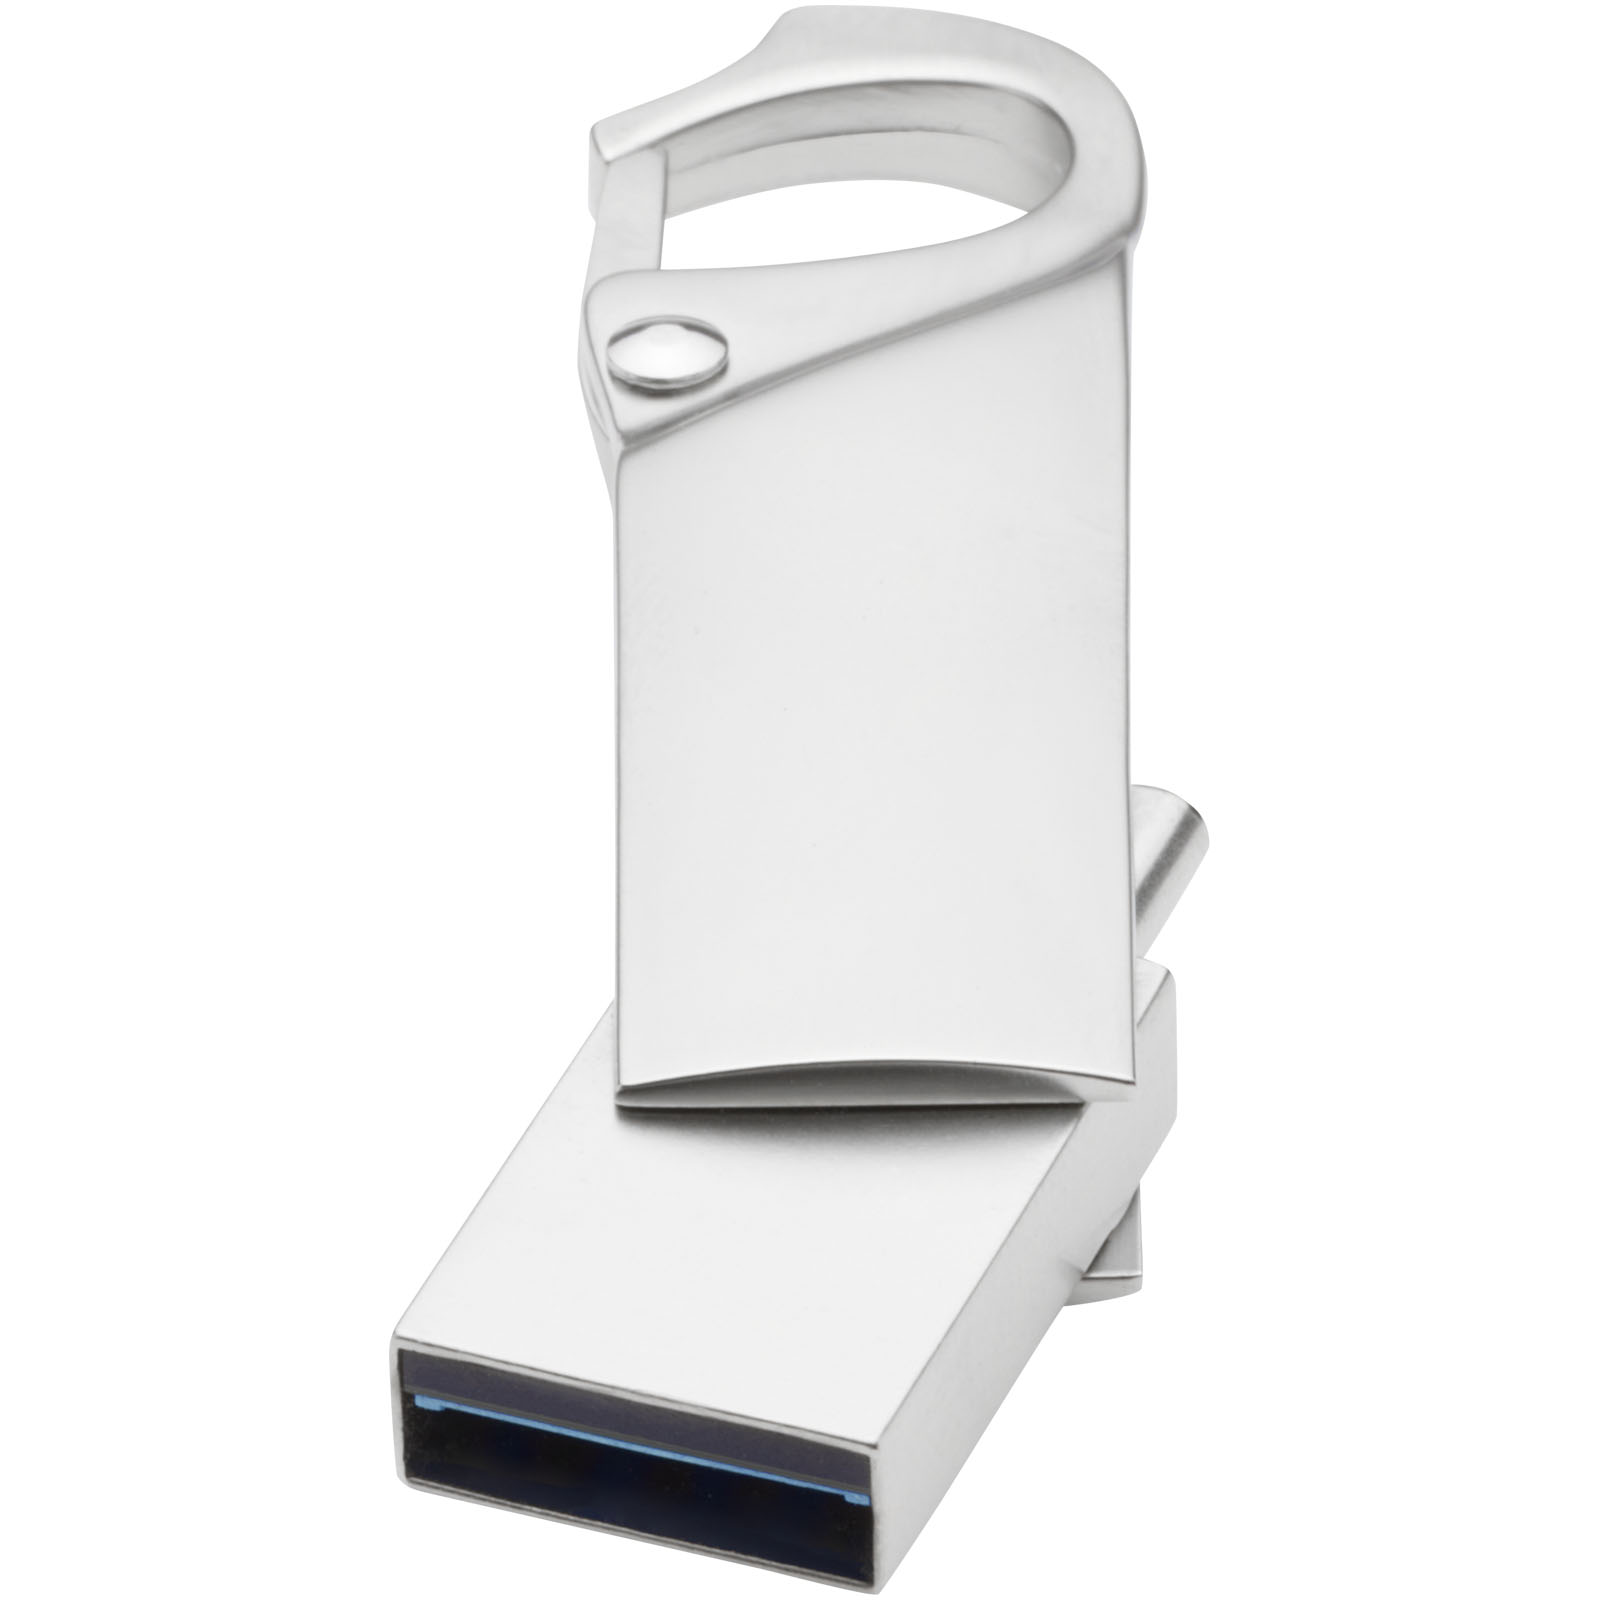 Memoria USB 3.0 in metallo con attacco di tipo C e moschettone - Cramlington